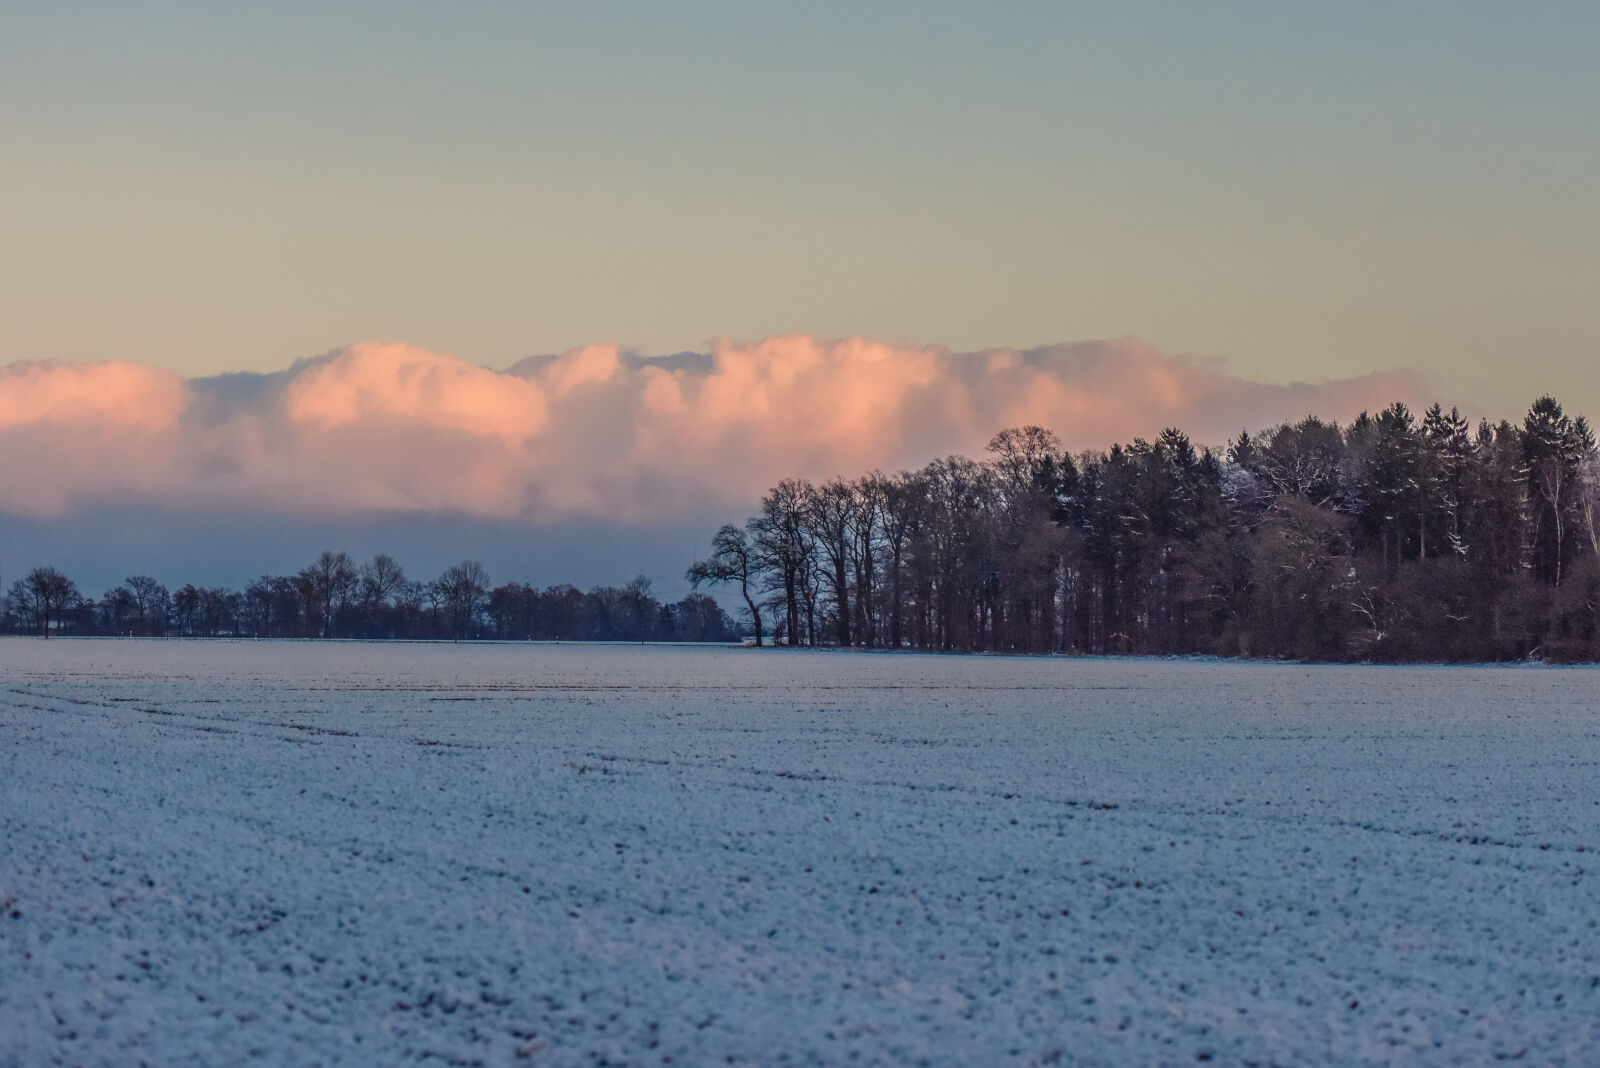 Nikon AF-S Nikkor 70-200mm F2.8G ED VR II sample photo. Clouds, forest, nature, winter photography